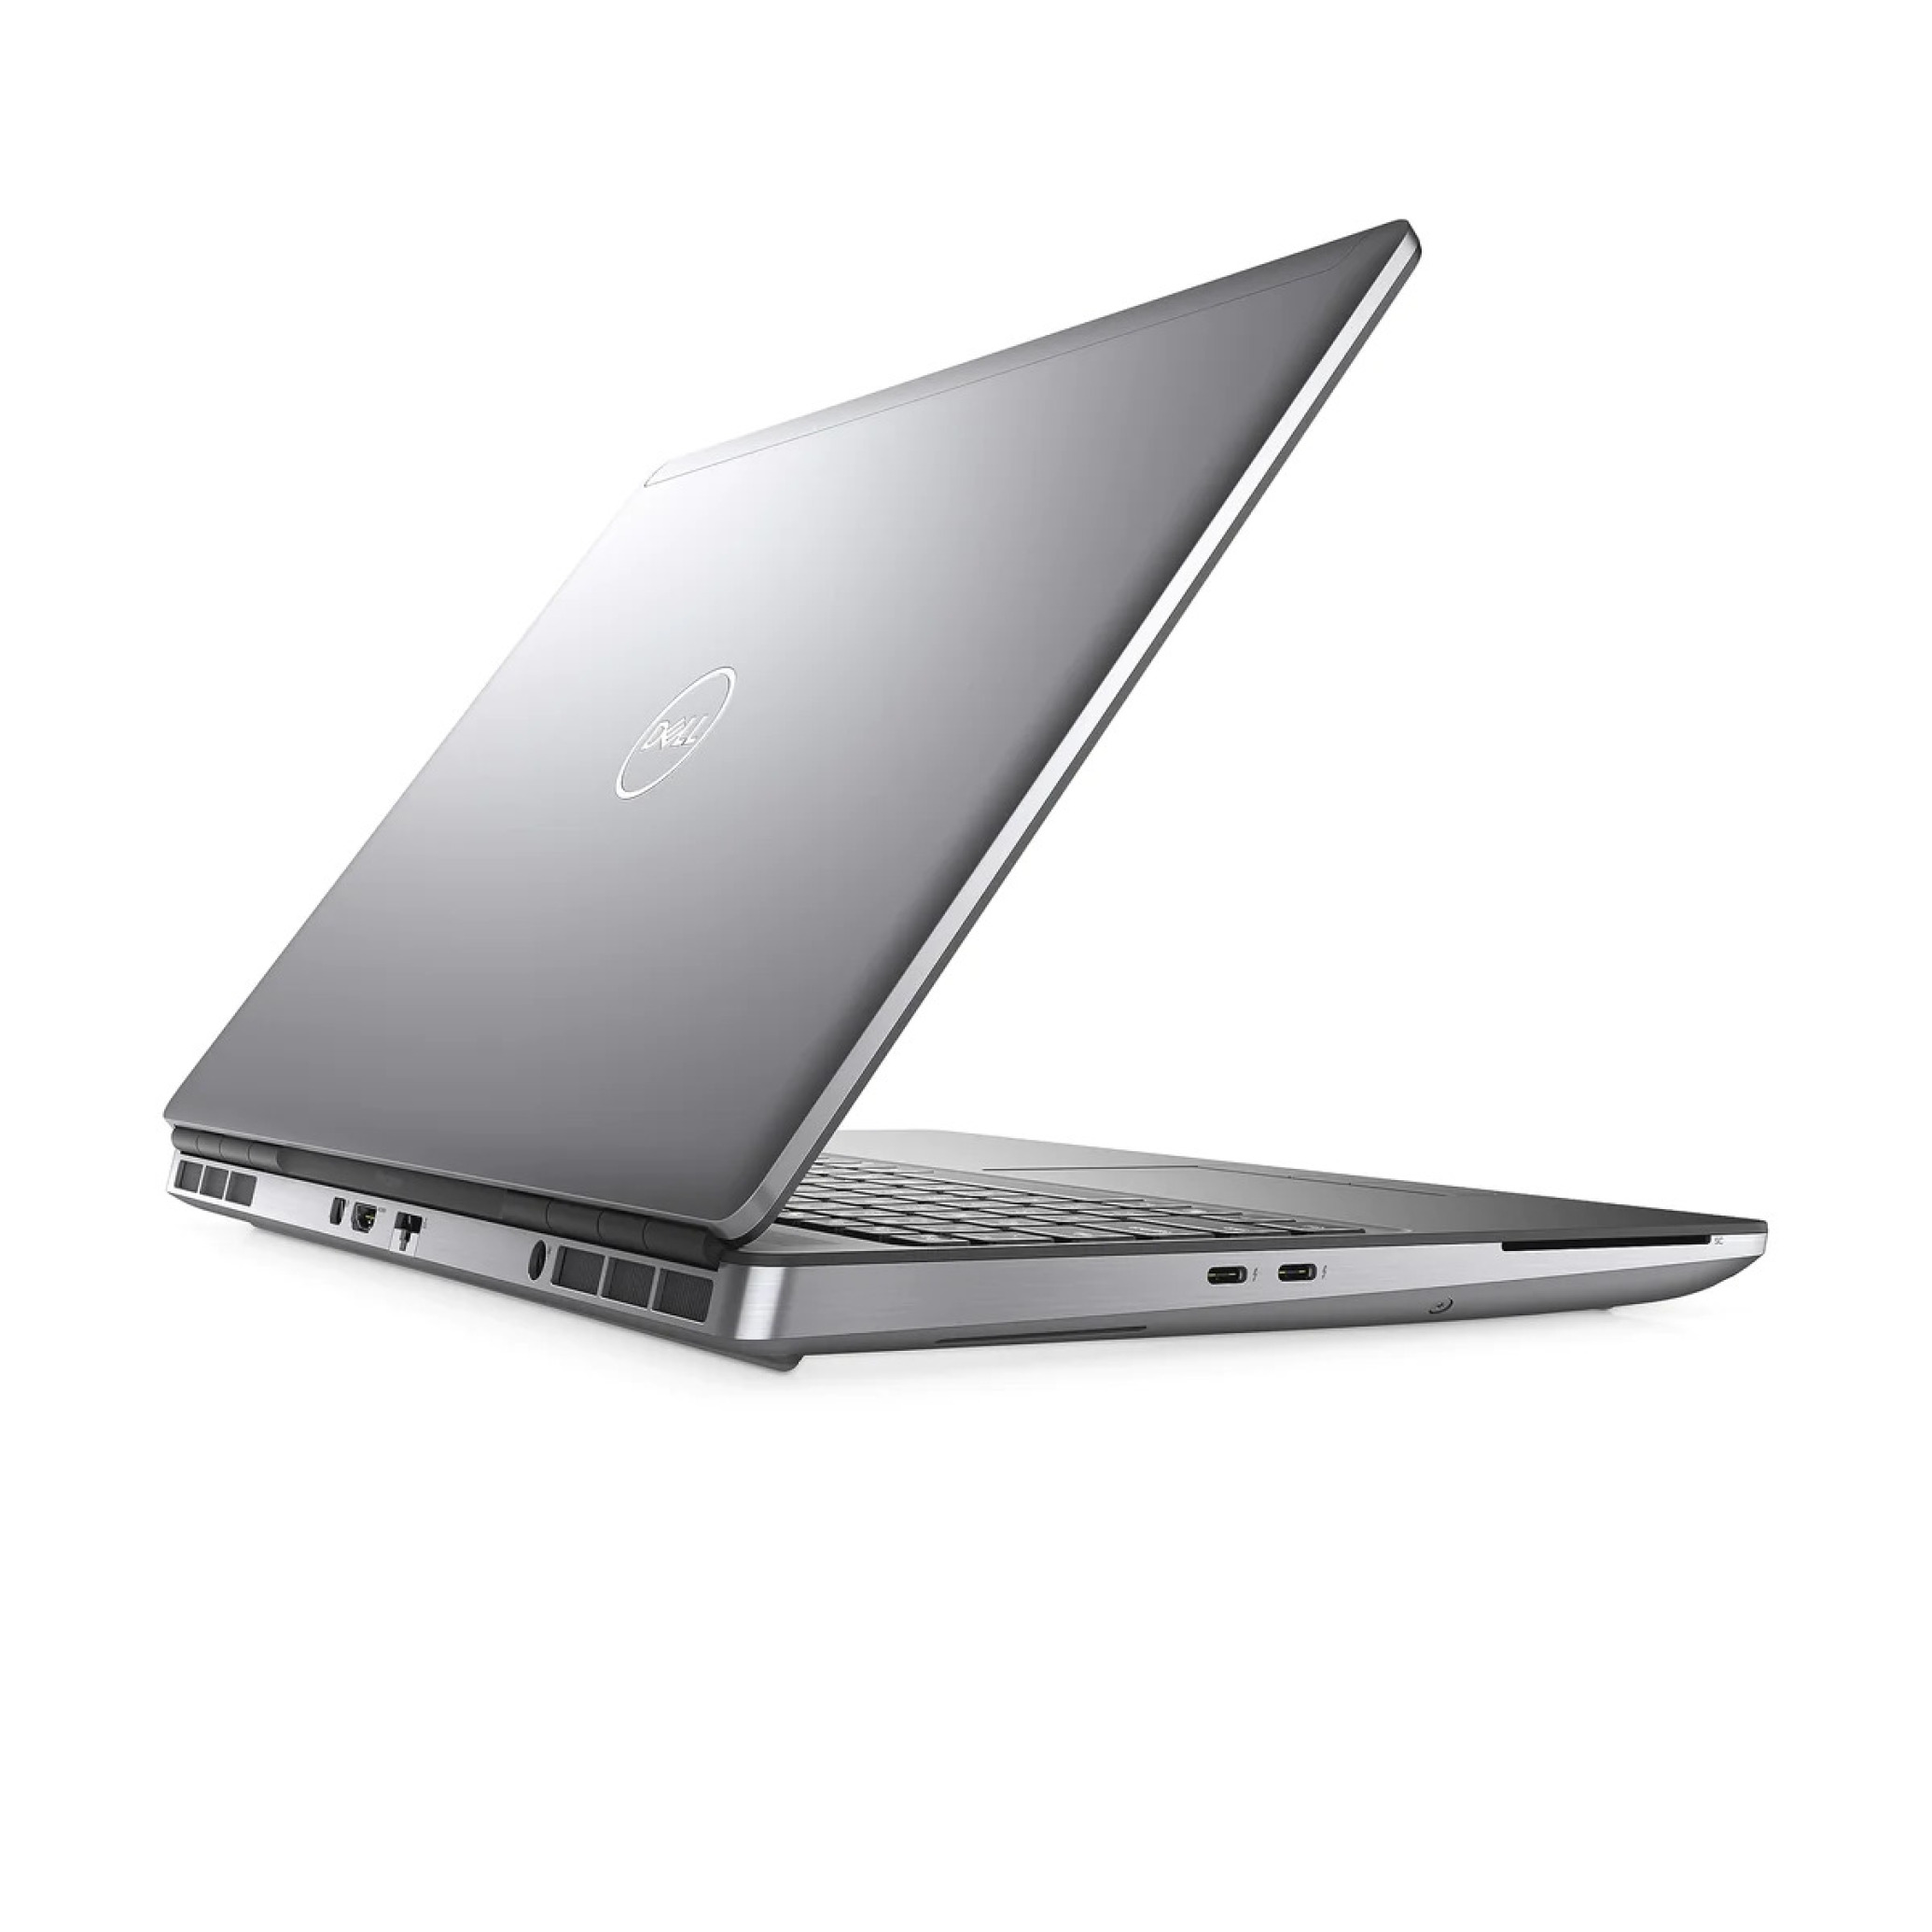  خرید و قیمت لپ تاپ Dell Precision 7550 - i7 10850H - T2000 4GB | لاکچری لپ تاپ 